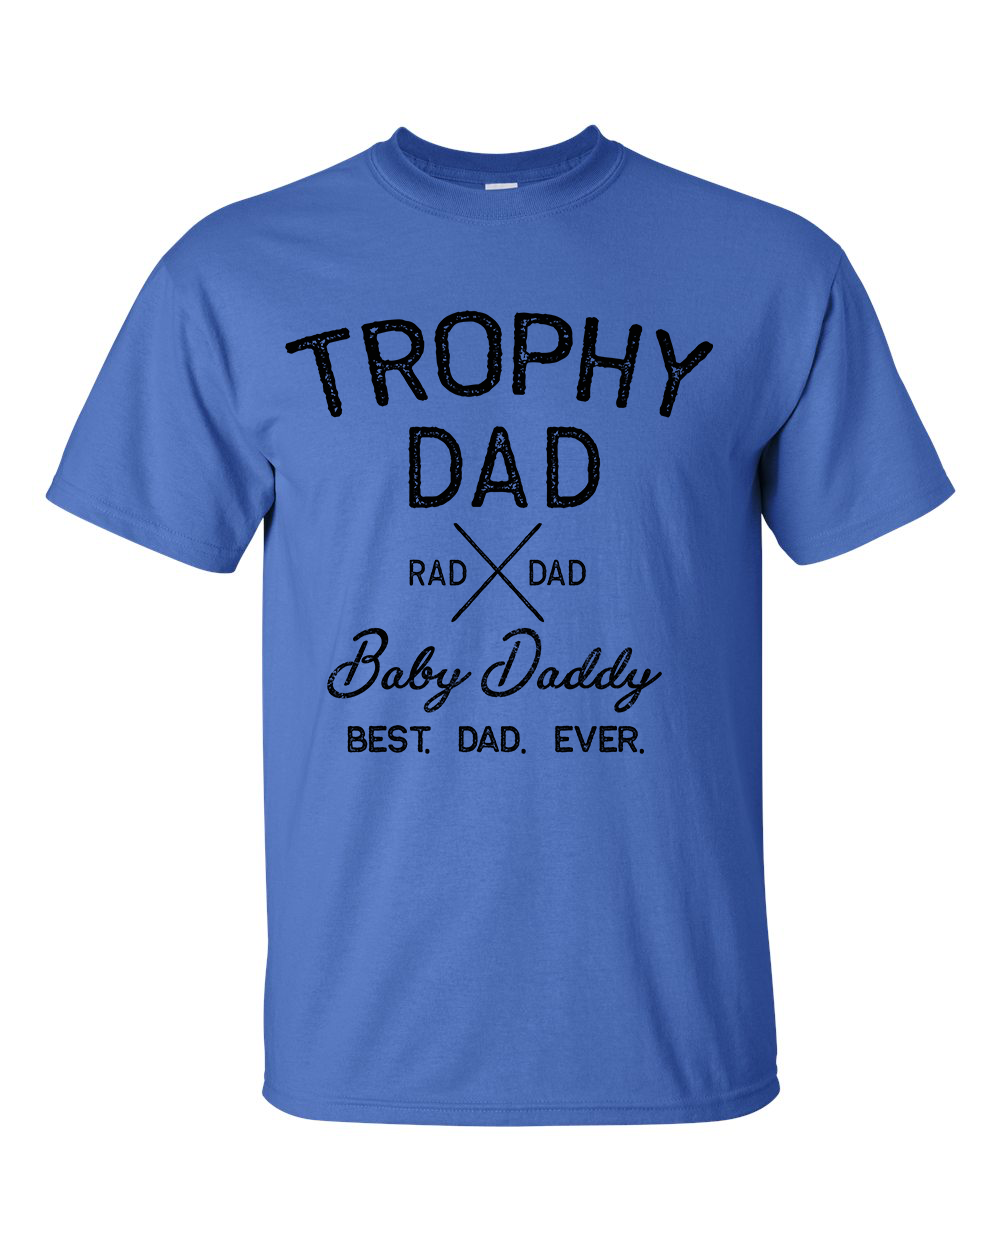 Mens Trophy Dad Gildan T-shirt